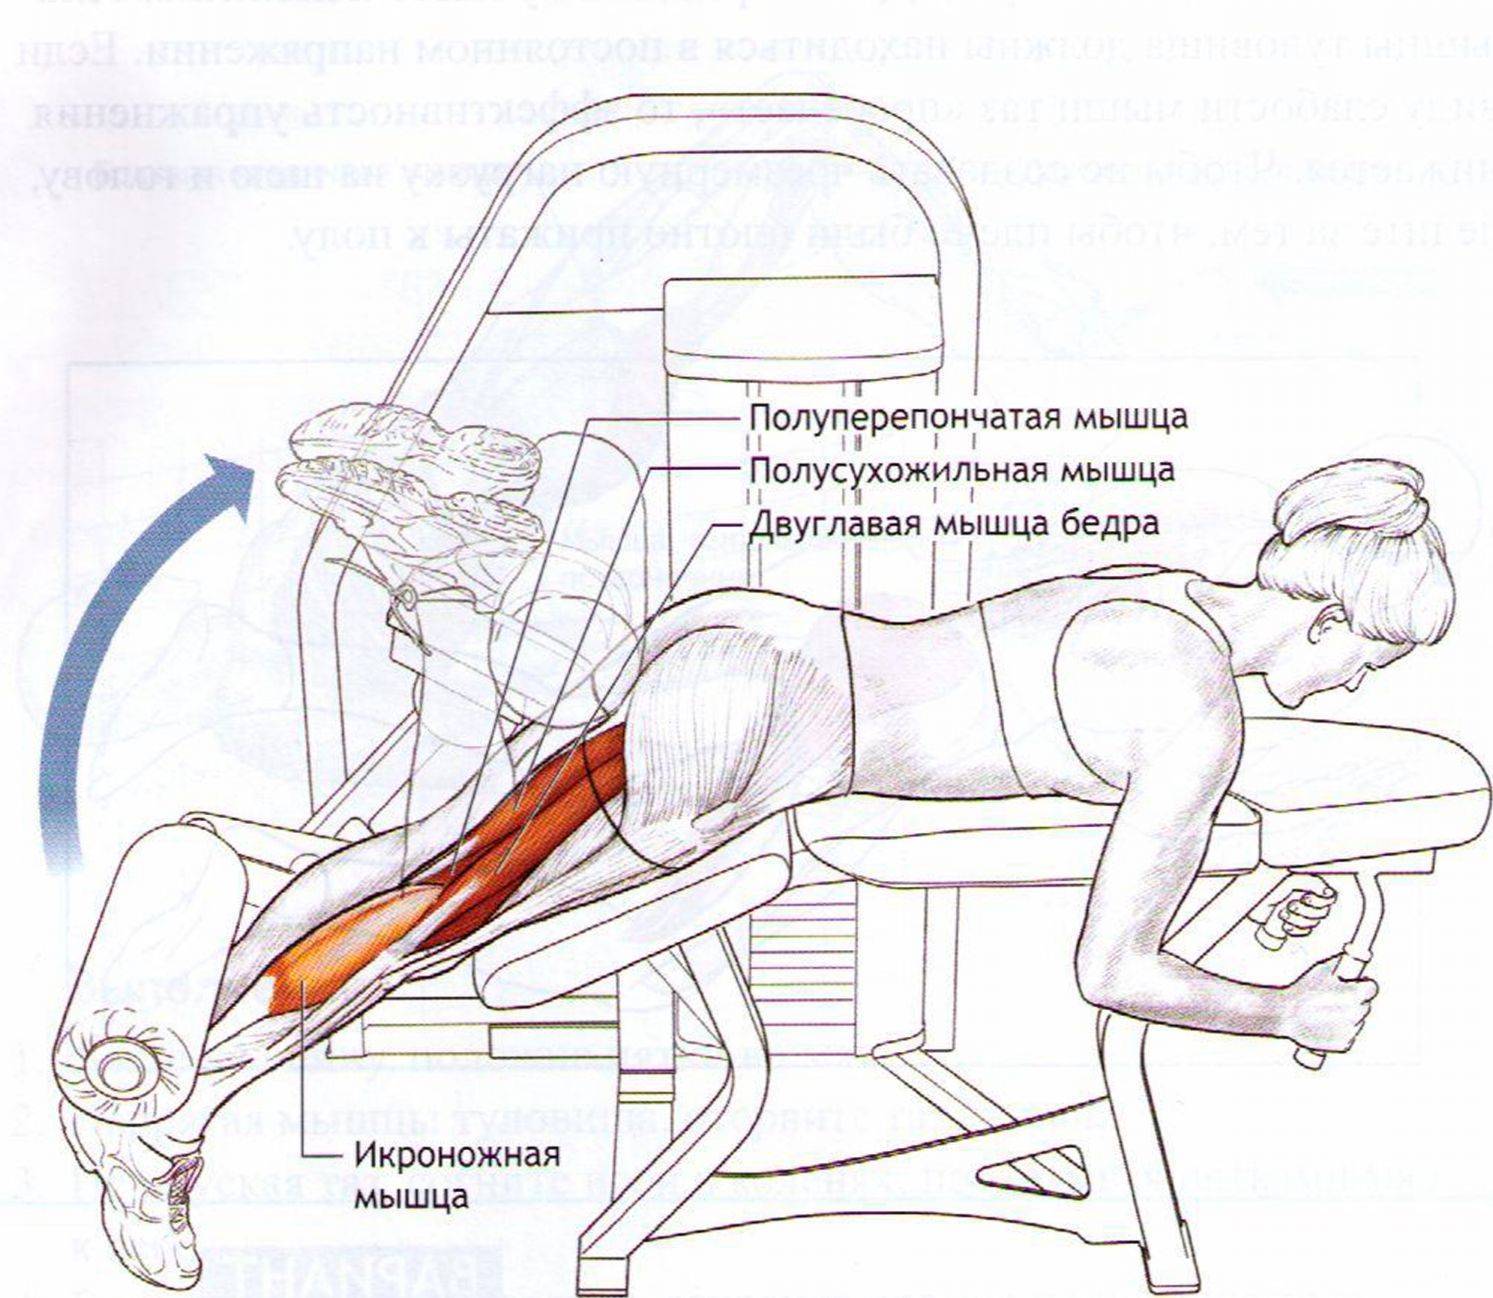 Тренировка в зале: сгибание ног лёжа в тренажёре | rulebody.ru — правила тела